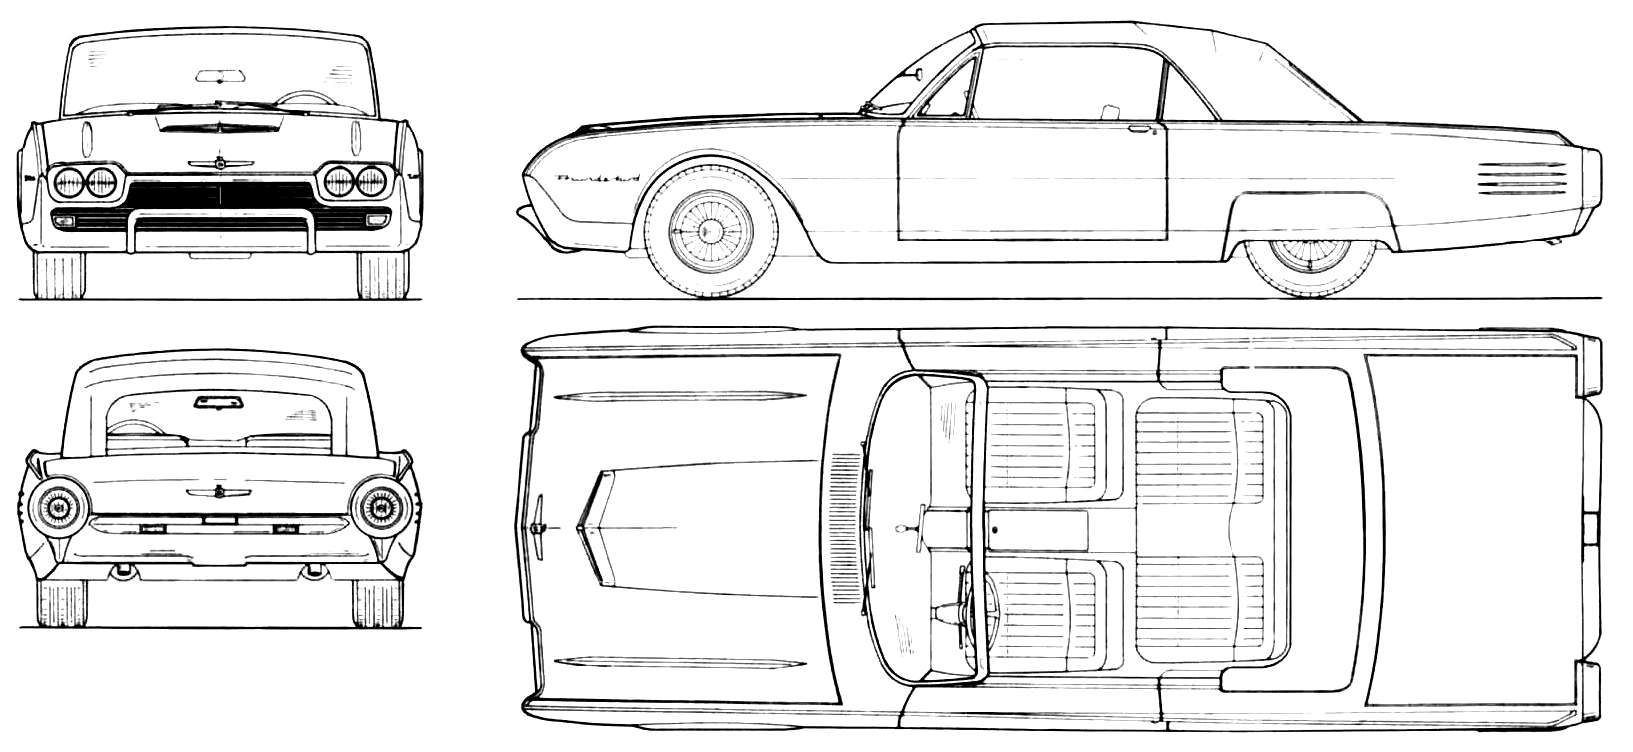 Ford Thunderbird blueprint